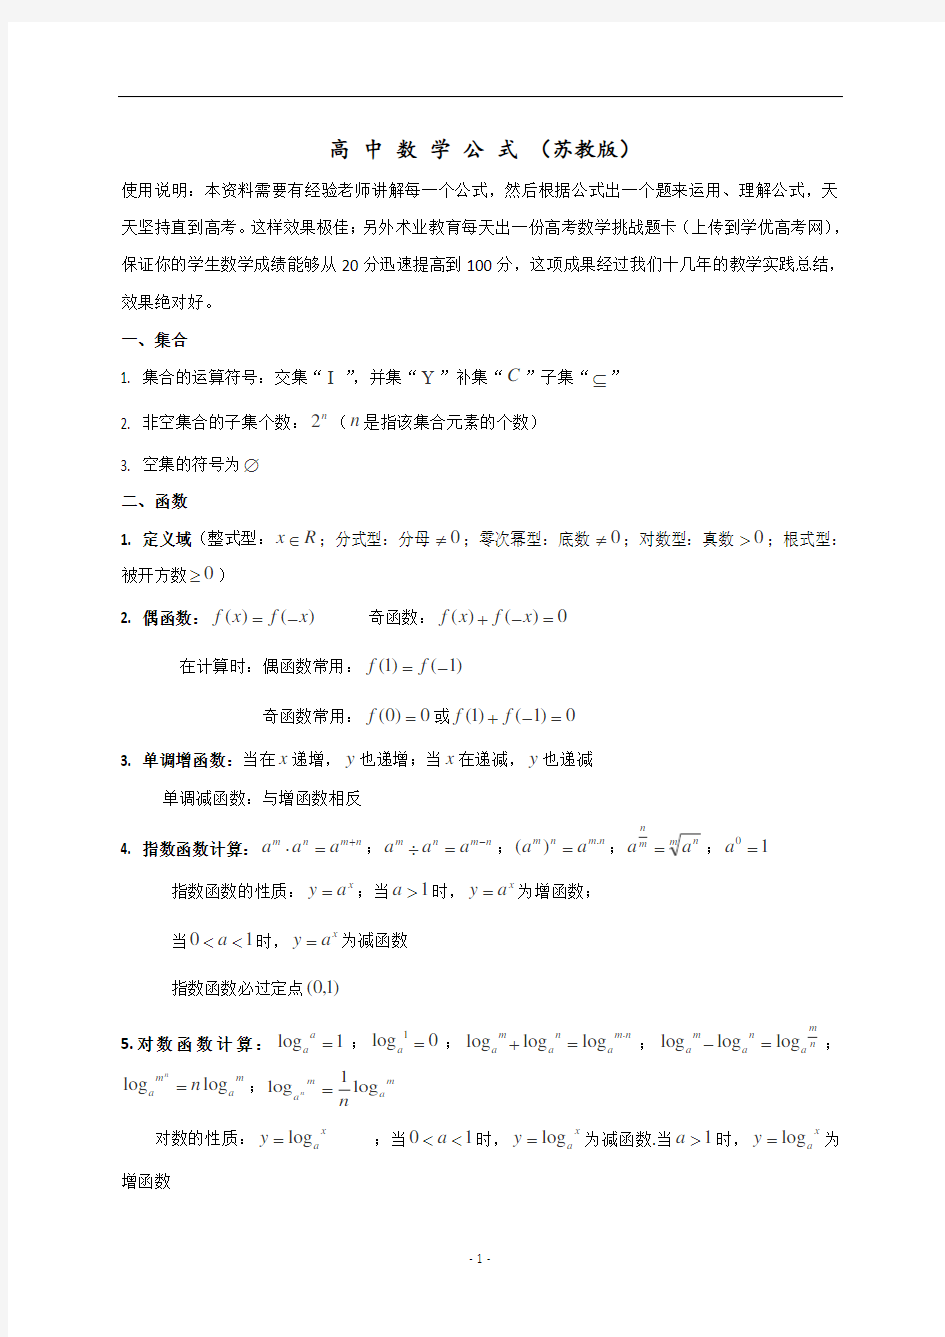 (完整word版)江苏省高中数学公式